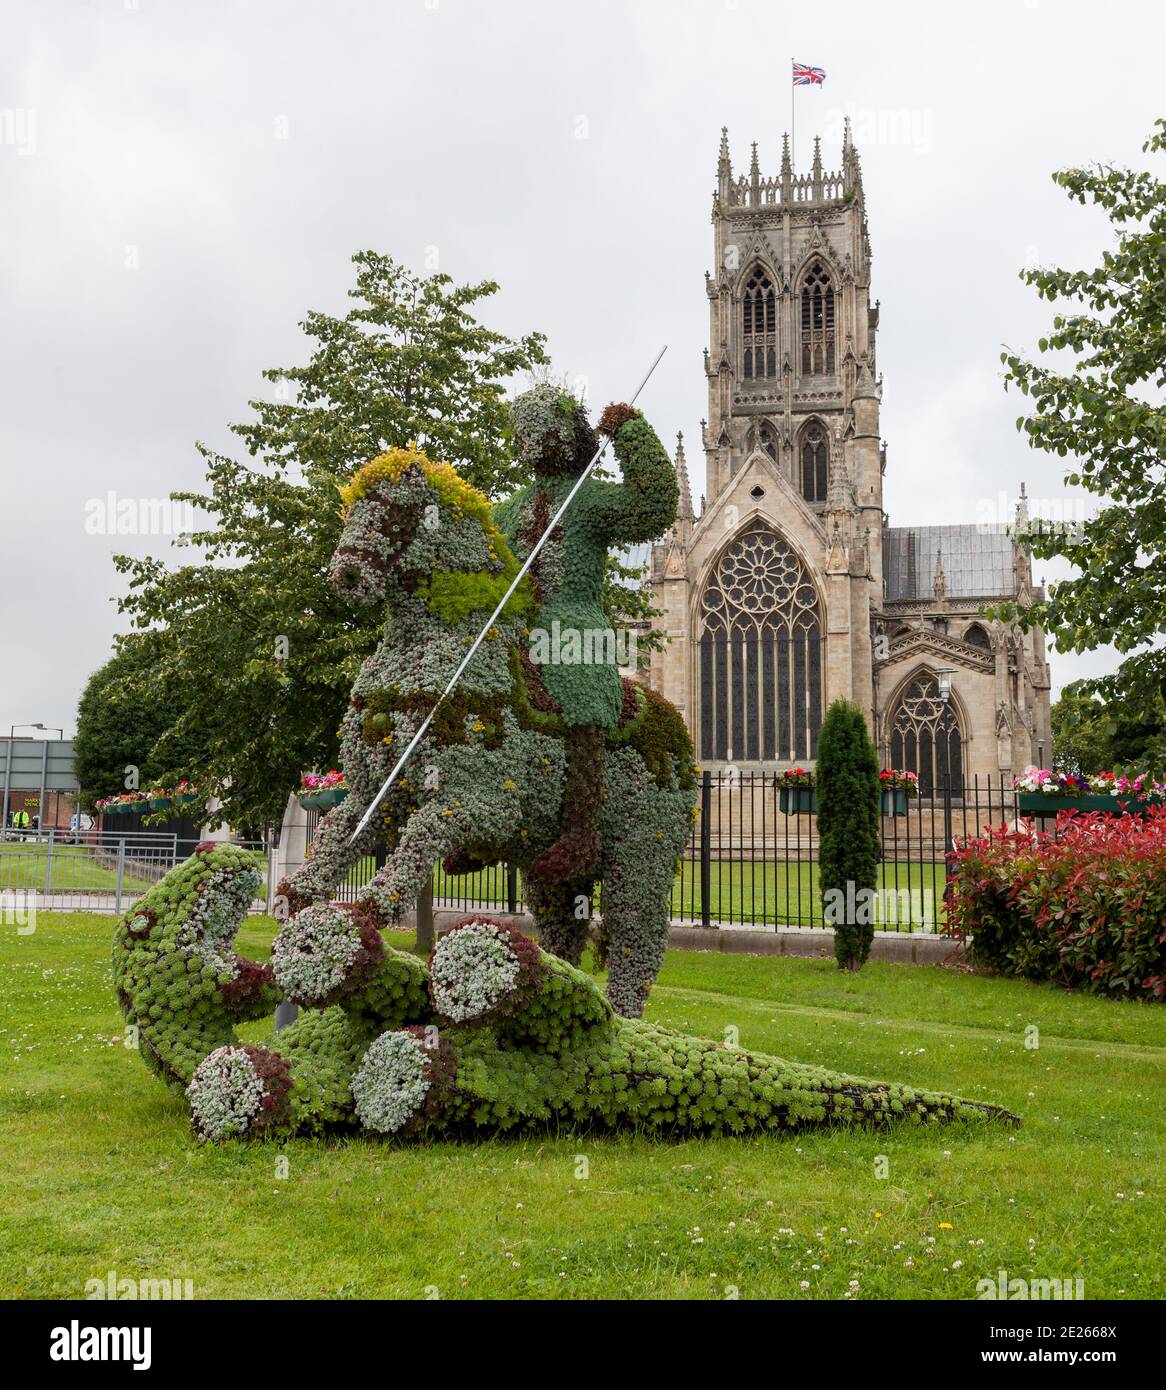 San Giorgio e il drago, una scultura floreale fuori Doncaster Minster nel South Yorkshire Foto Stock